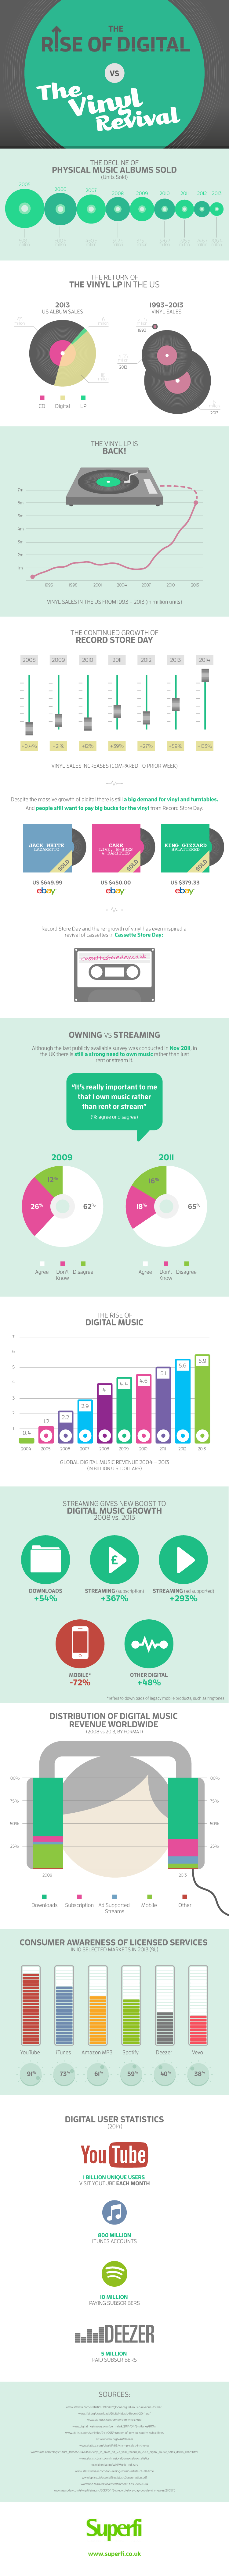 Infografía - El ascenso de la música digital contra el revival del vinilo